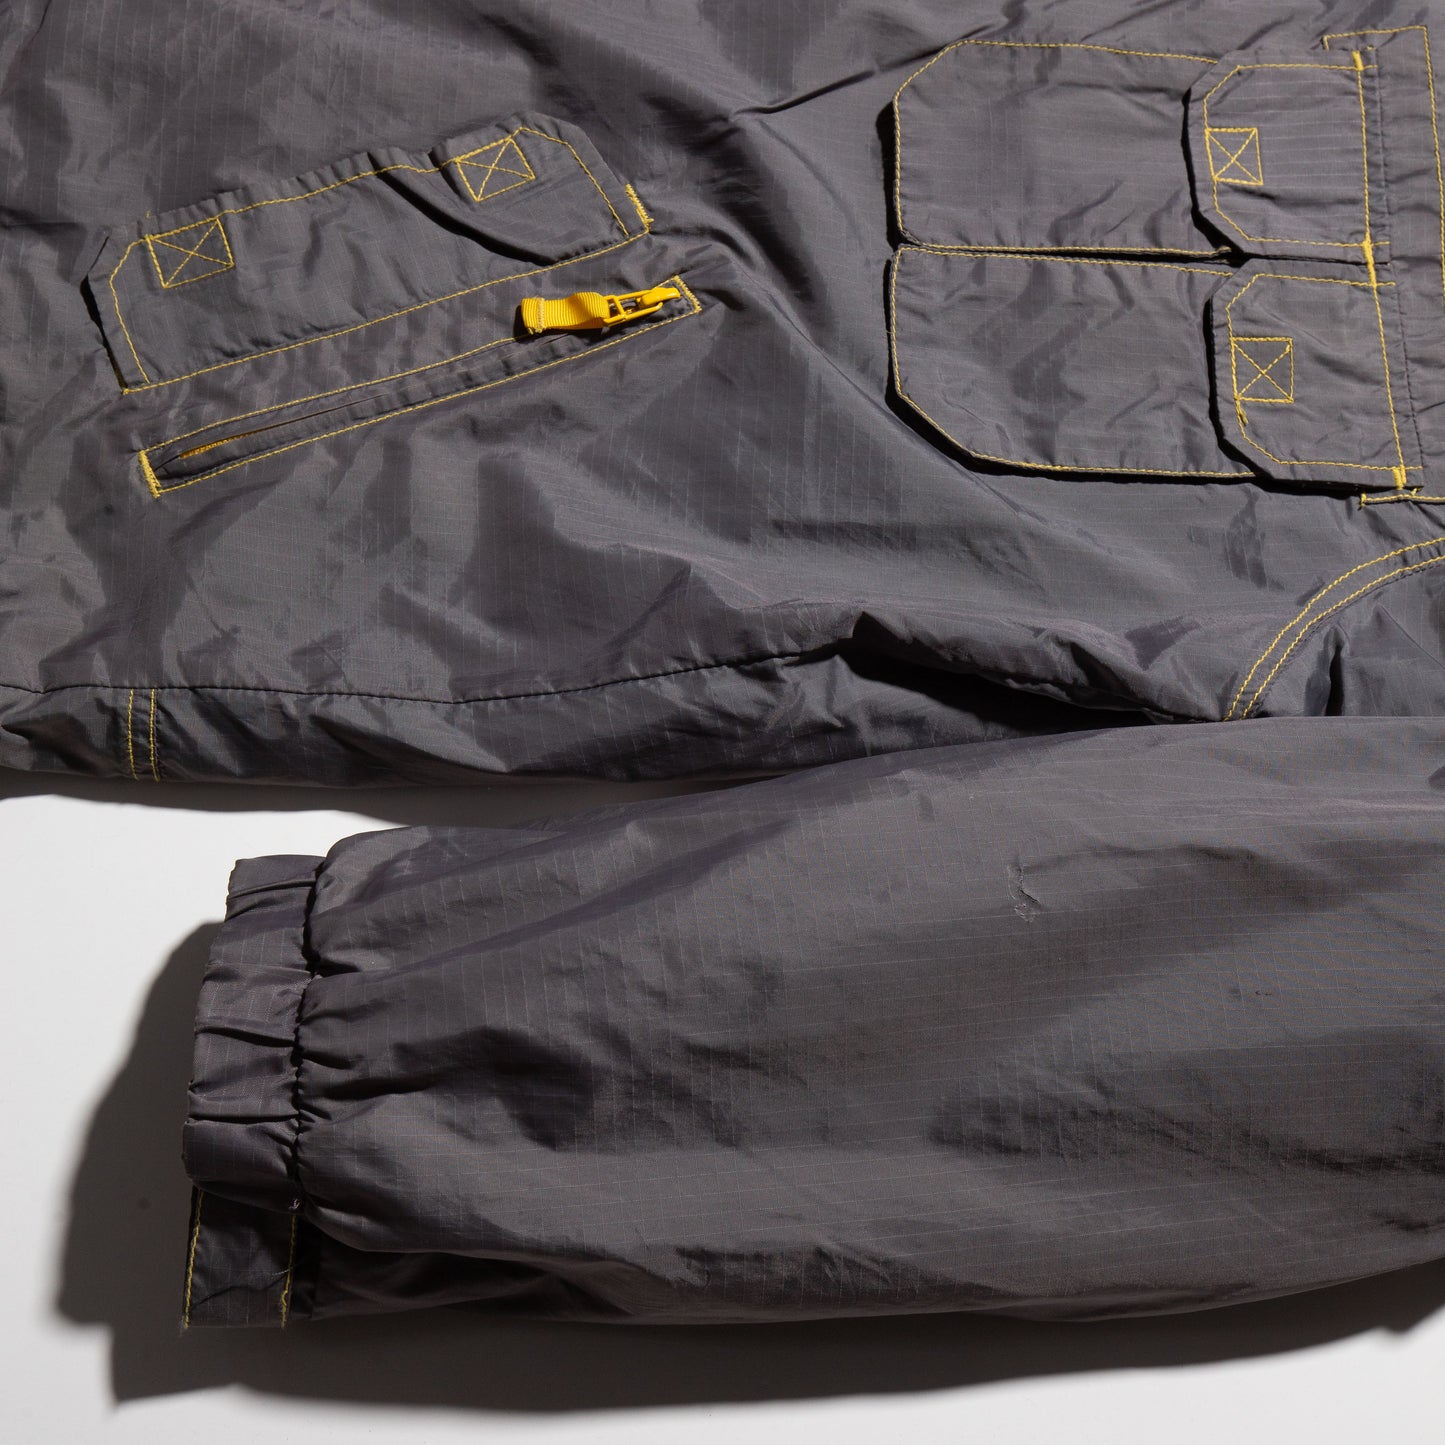 vintage p-tek utility nylon jacket